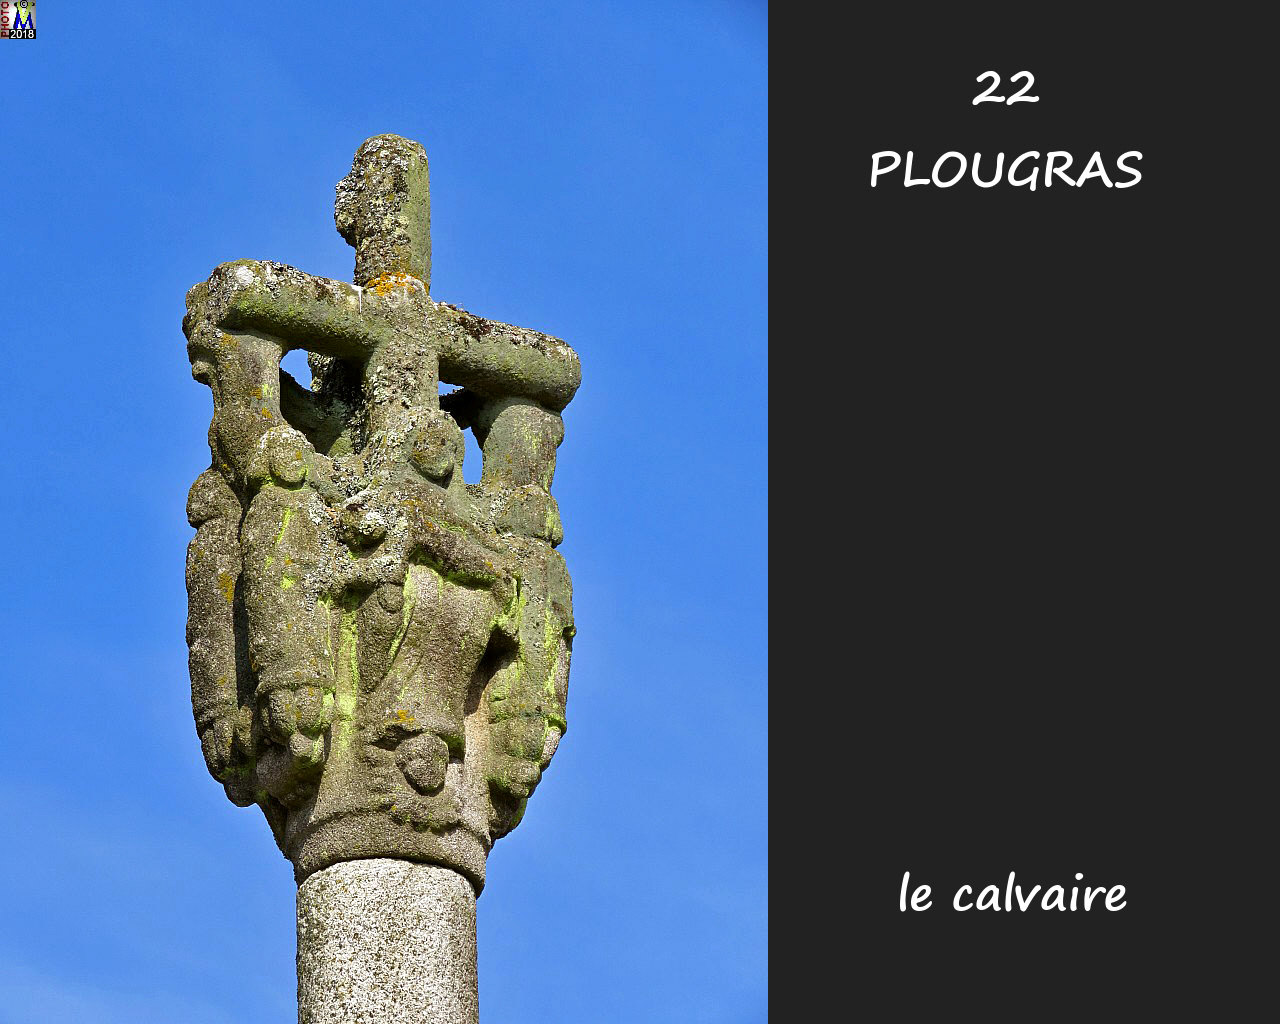 22PLOUGRAS_calvaire_102.jpg